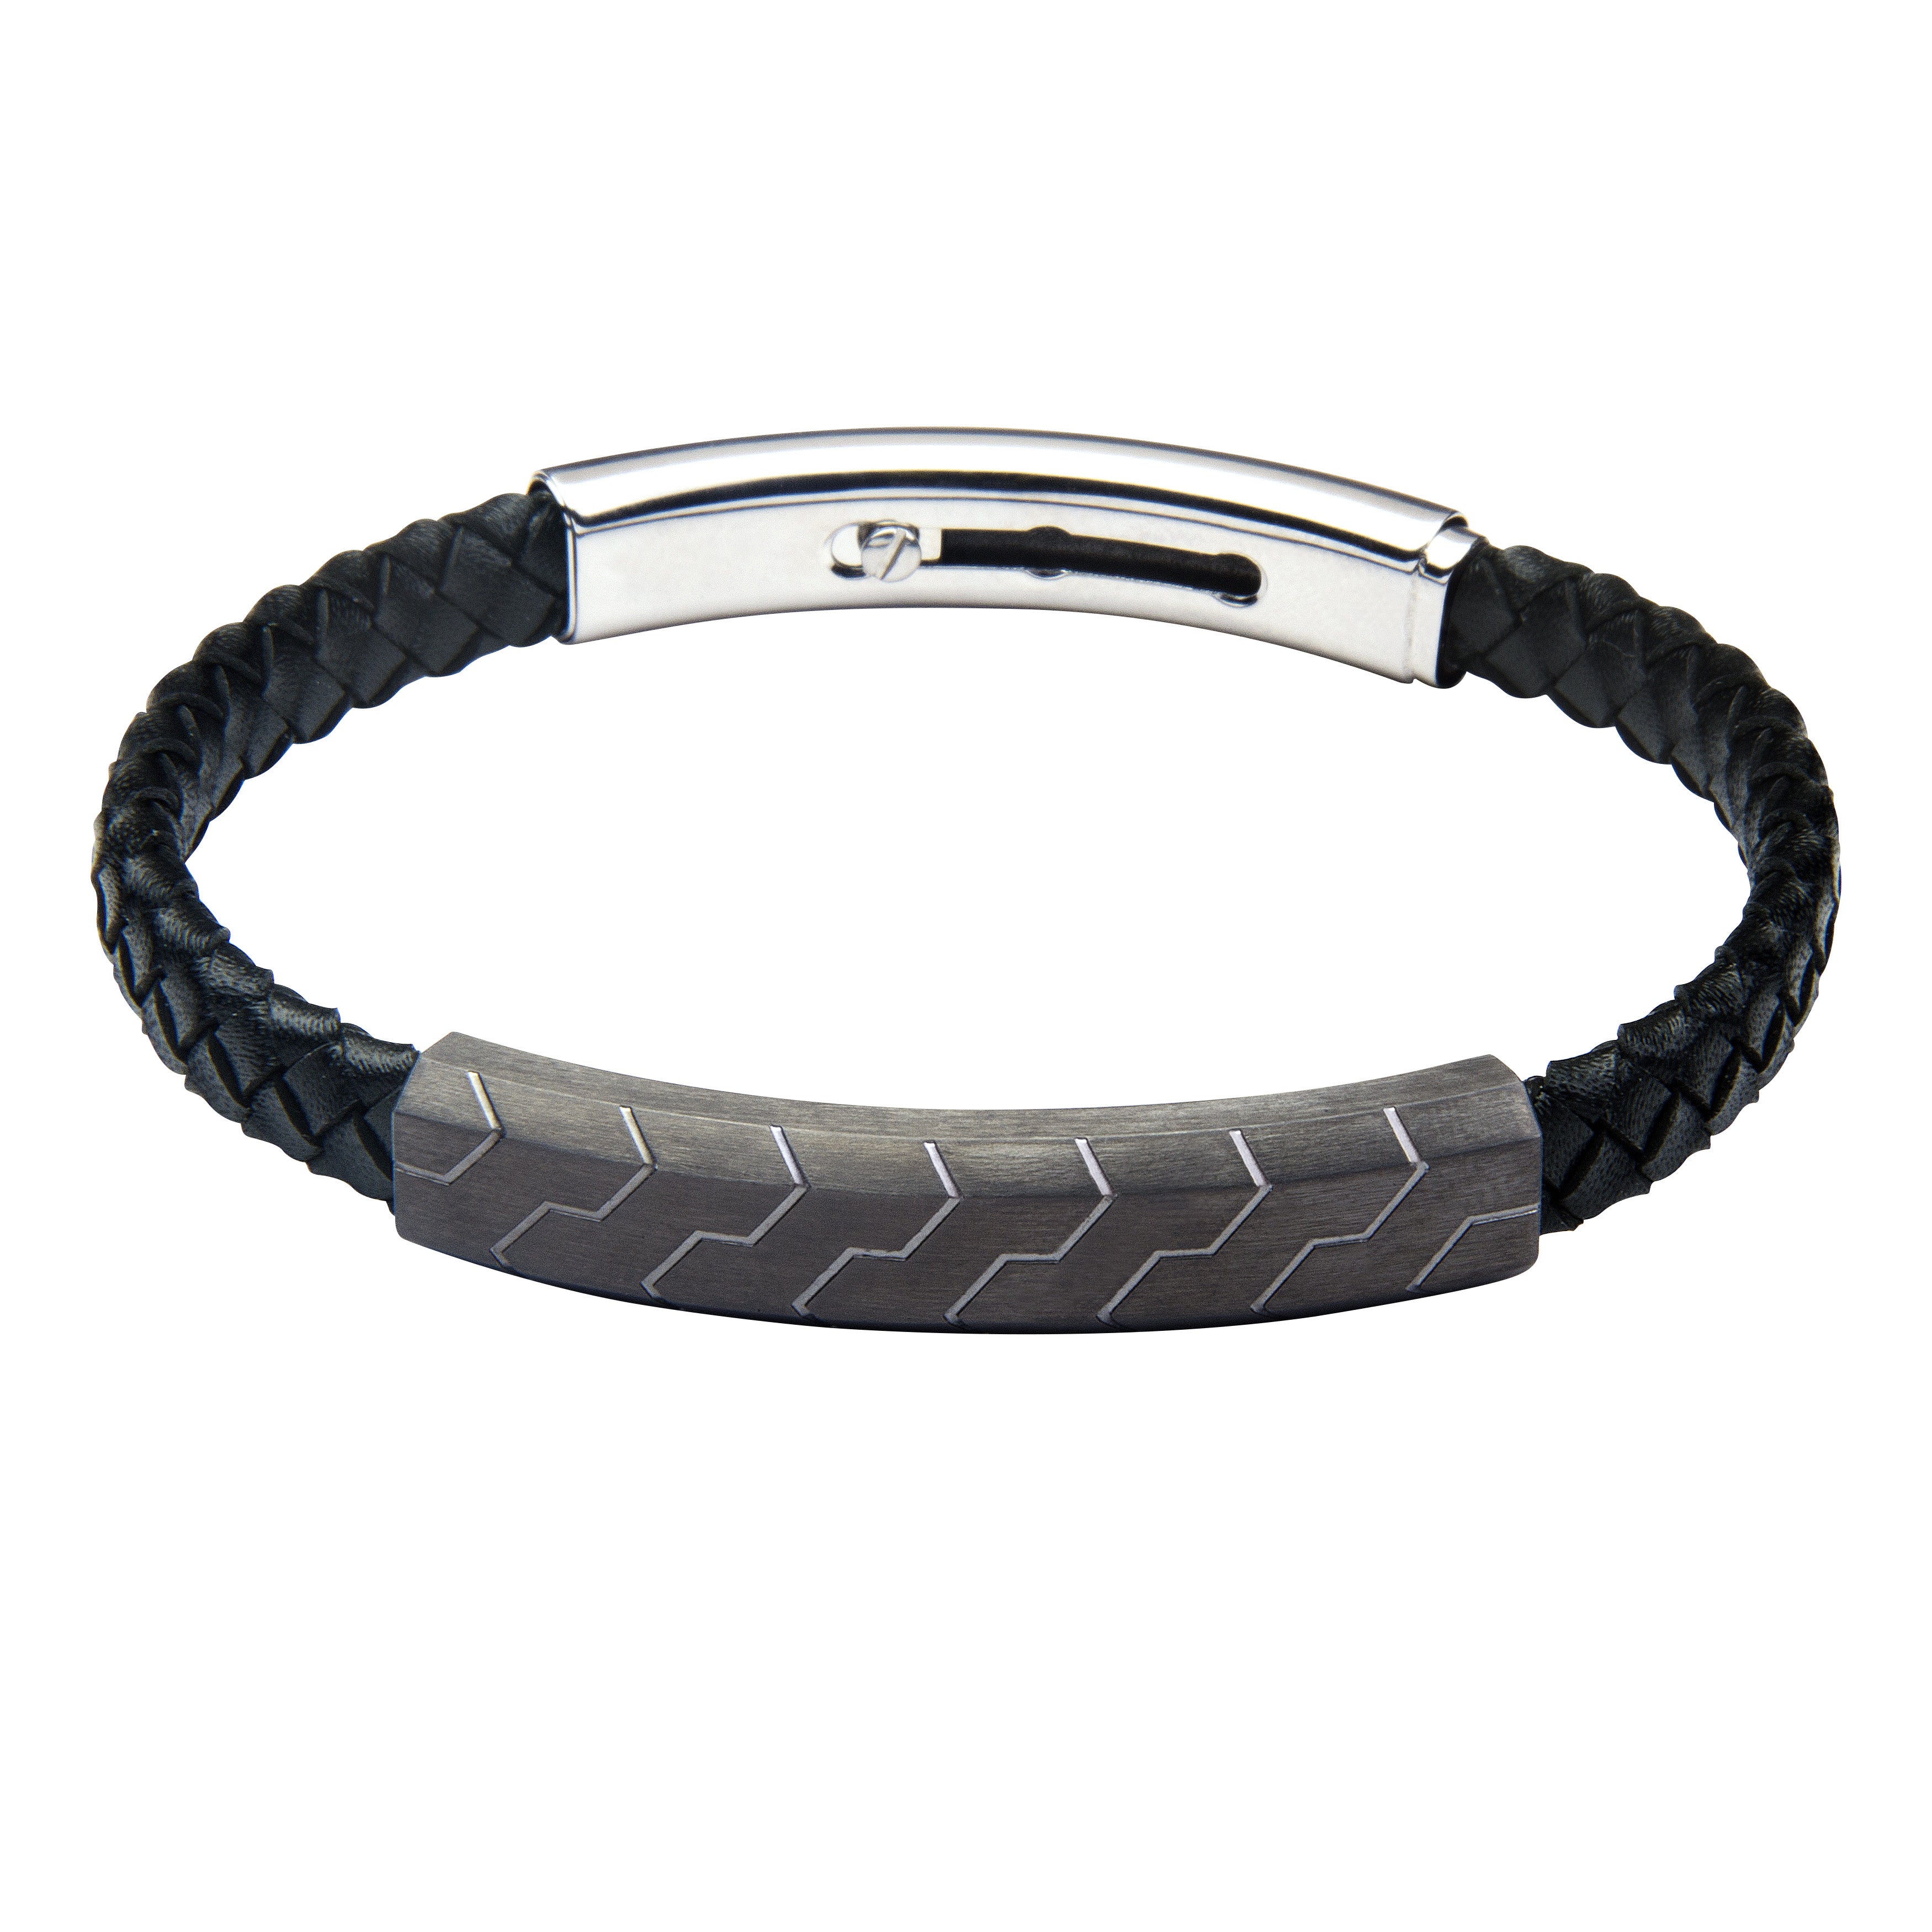 FUB12 leather and steel adjustable bracelet